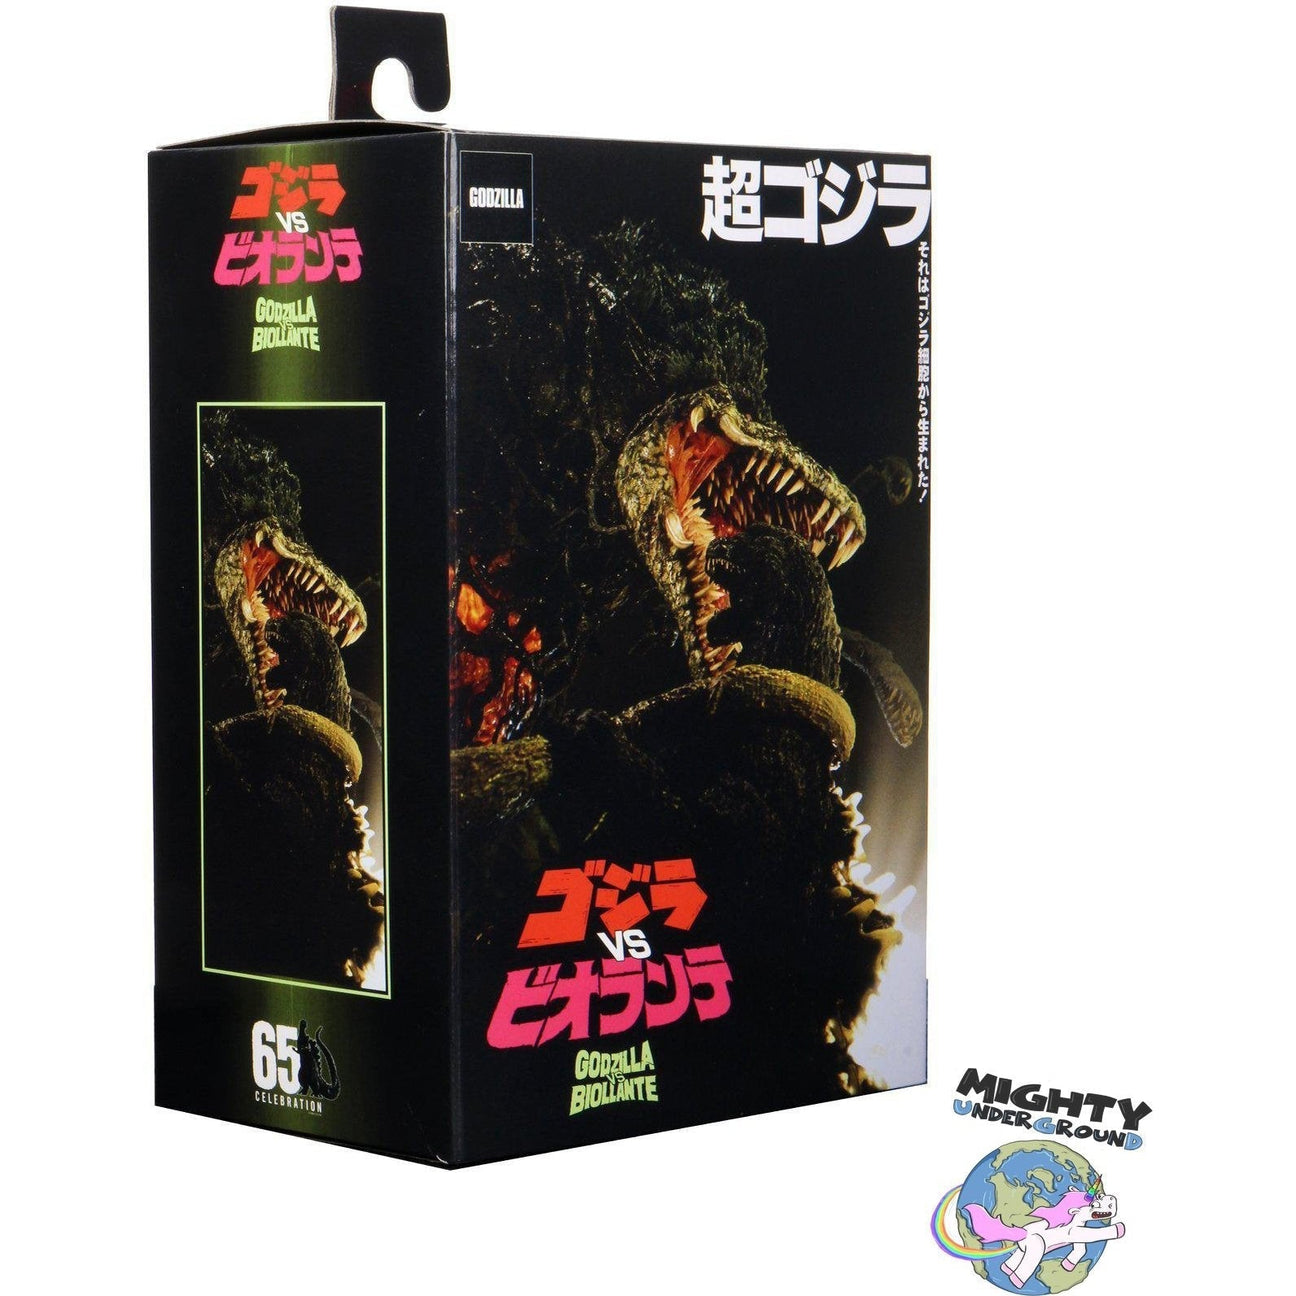 Godzilla (1989, Biollante Bile)-Actionfiguren-NECA-mighty-underground